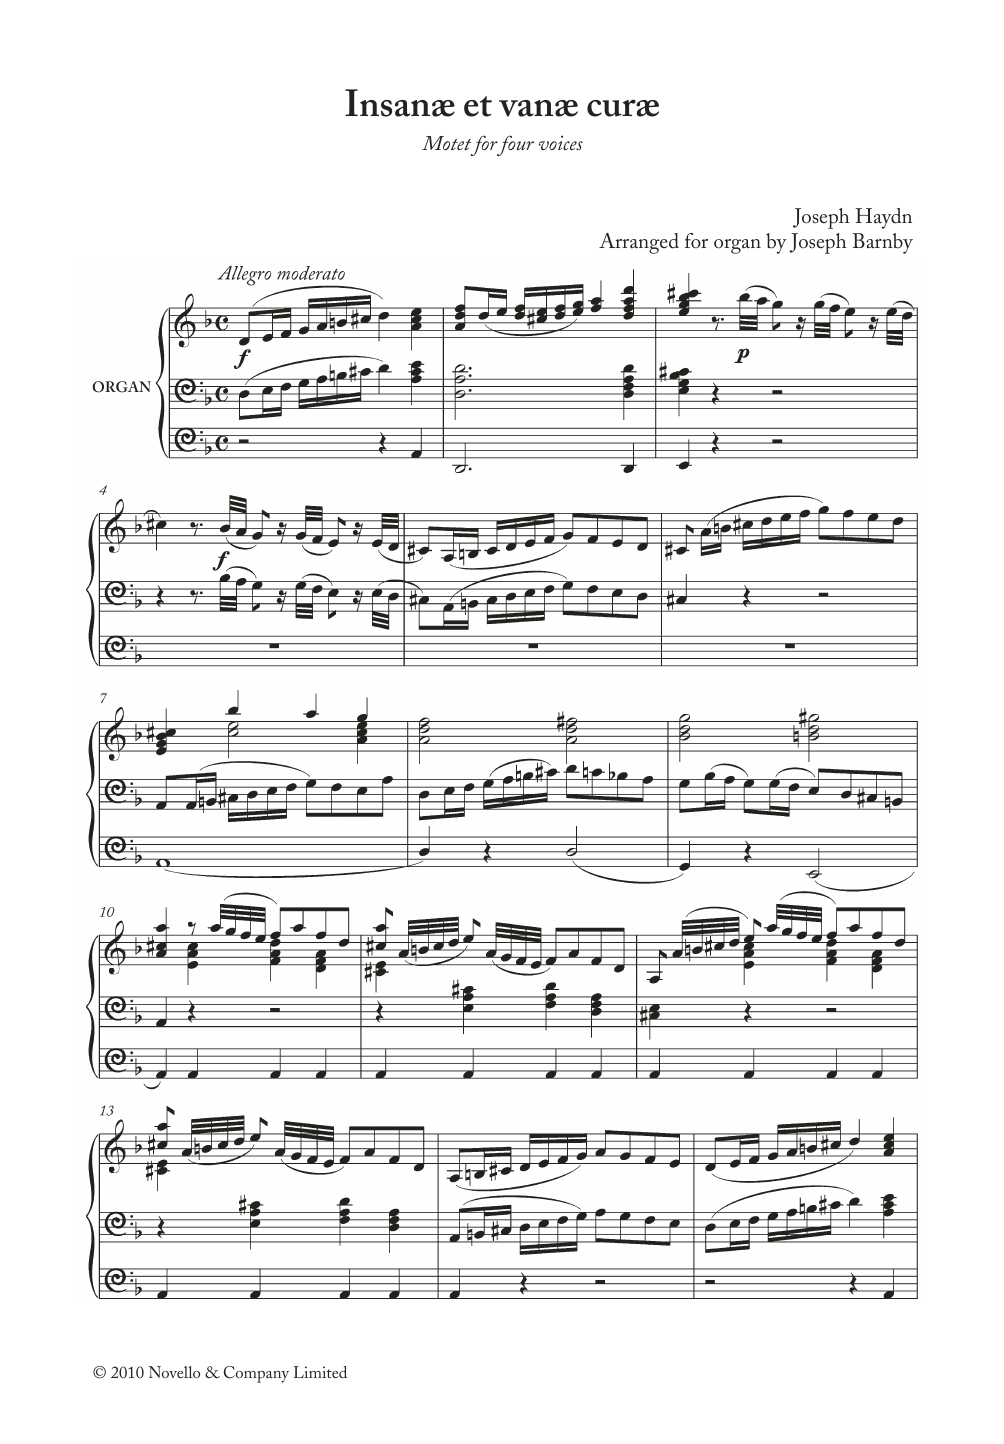 Franz Joseph Haydn Insanae Et Vanae Curae Sheet Music Notes & Chords for Choir - Download or Print PDF